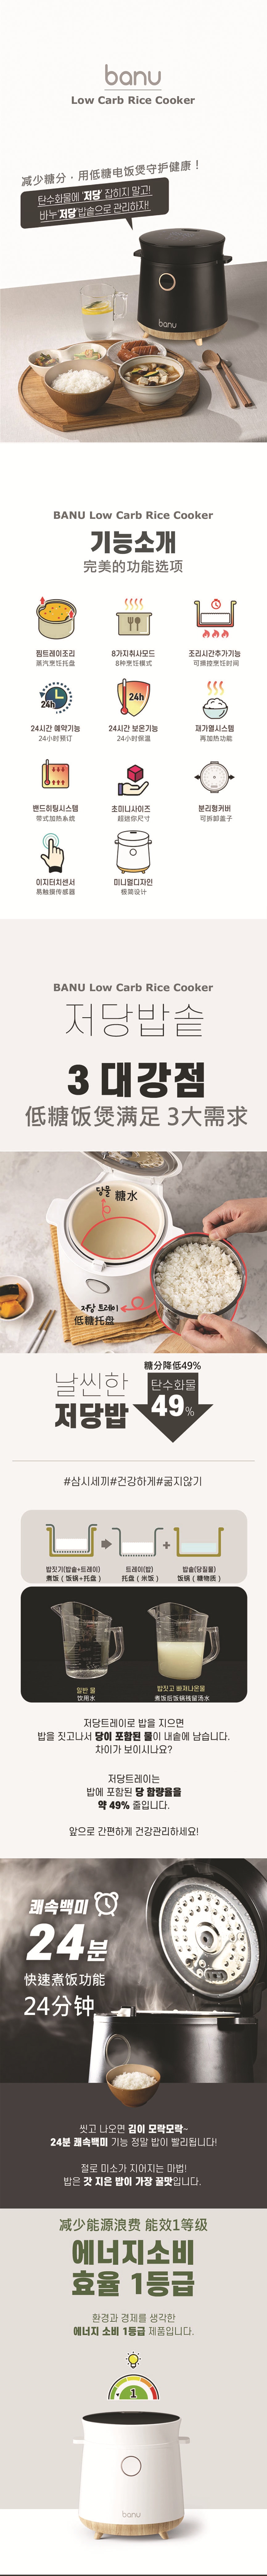 韩国 BANU 高颜值减糖电饭煲 低碳水化合物 多功能 LED 一键式烹饪 白色 1.5 升 脱糖电饭煲